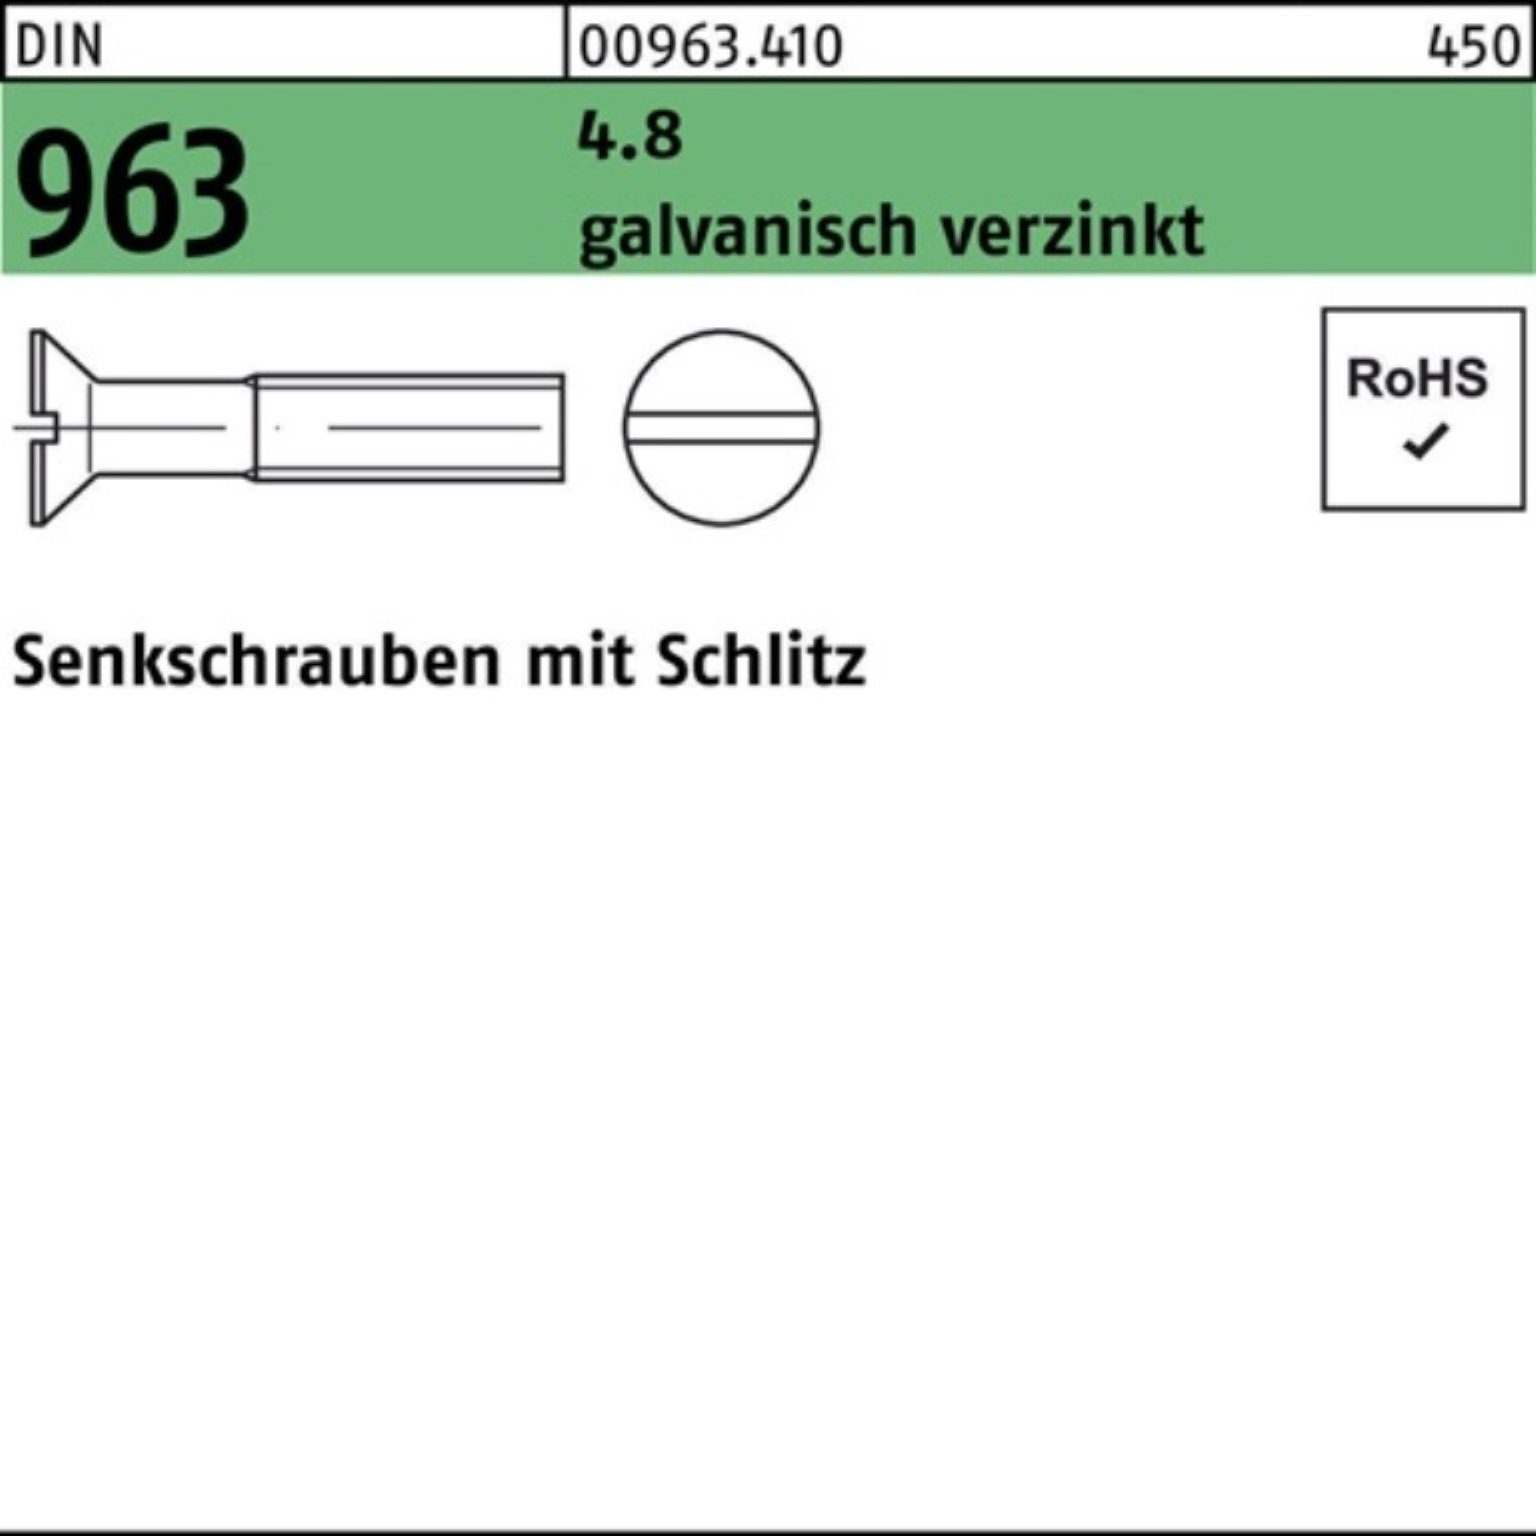 Senkschraube 963 DIN M10x Schlitz 4.8 St 55 100 Pack galv.verz. 100er Reyher Senkschraube